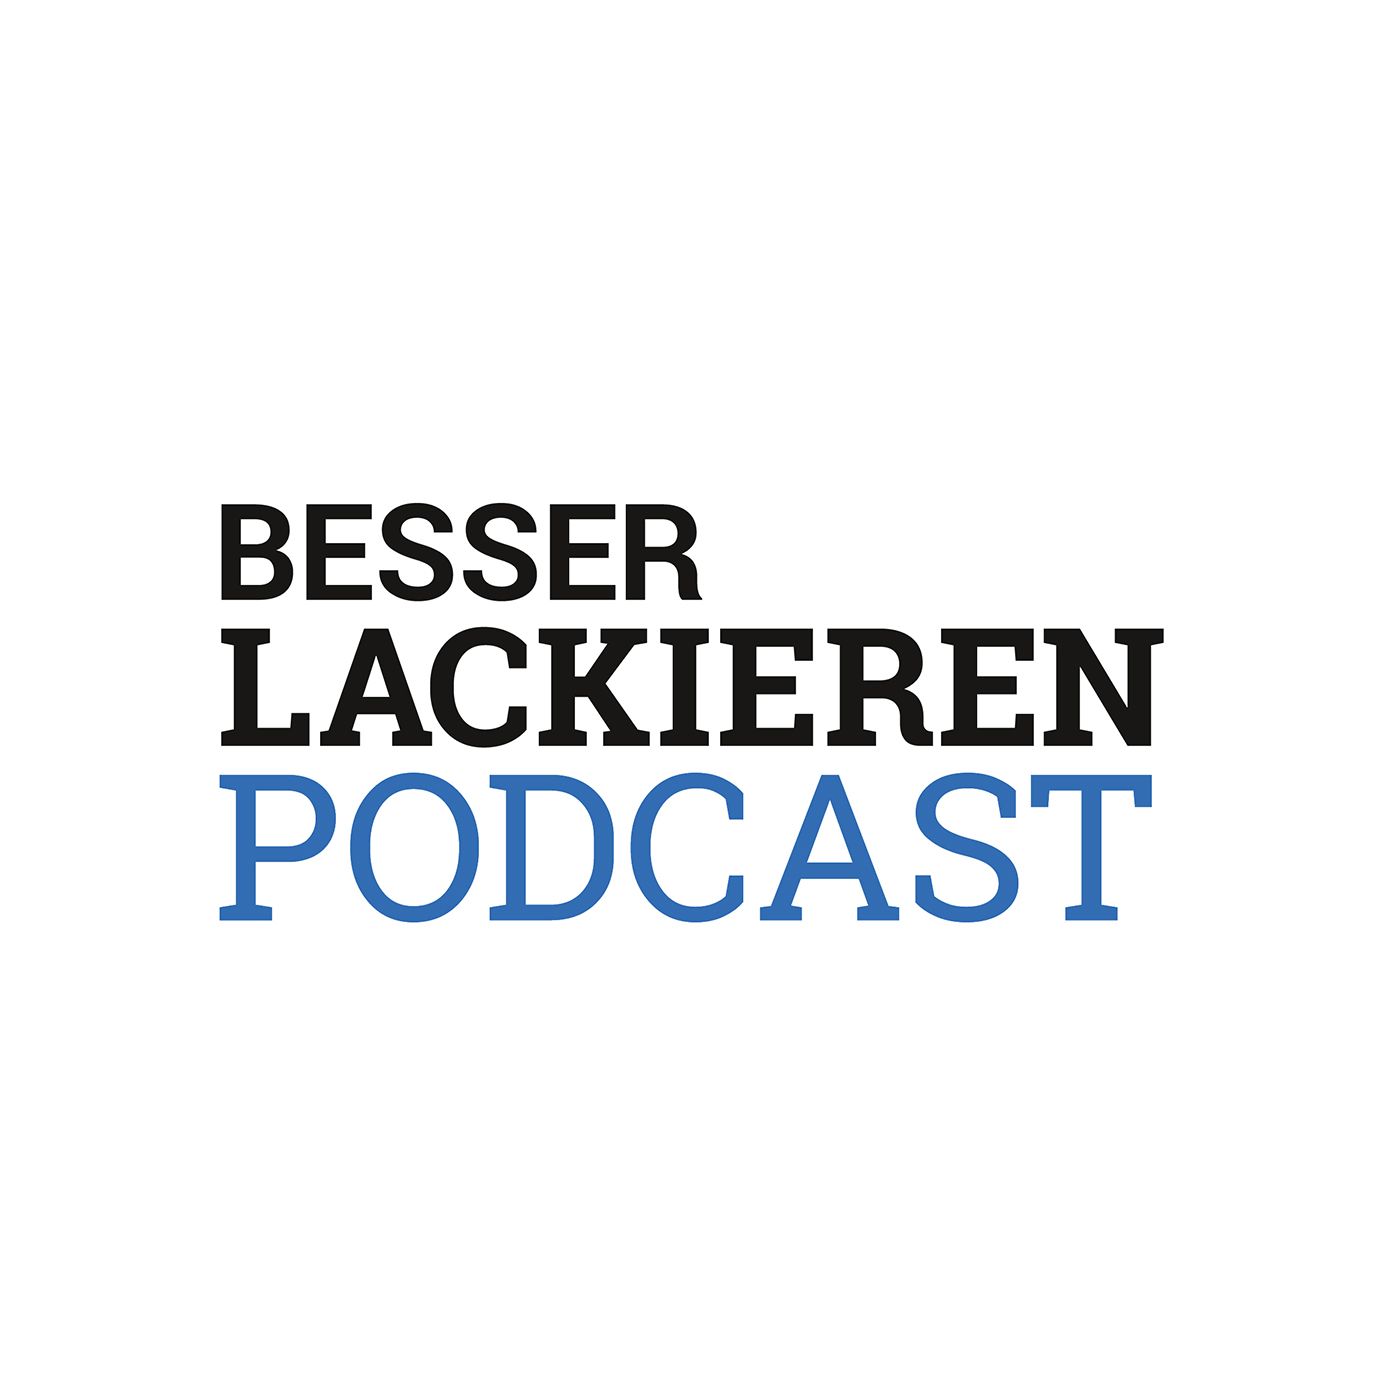 BESSER LACKIEREN Podcast #27: Schadensursachen kennen und vermeiden